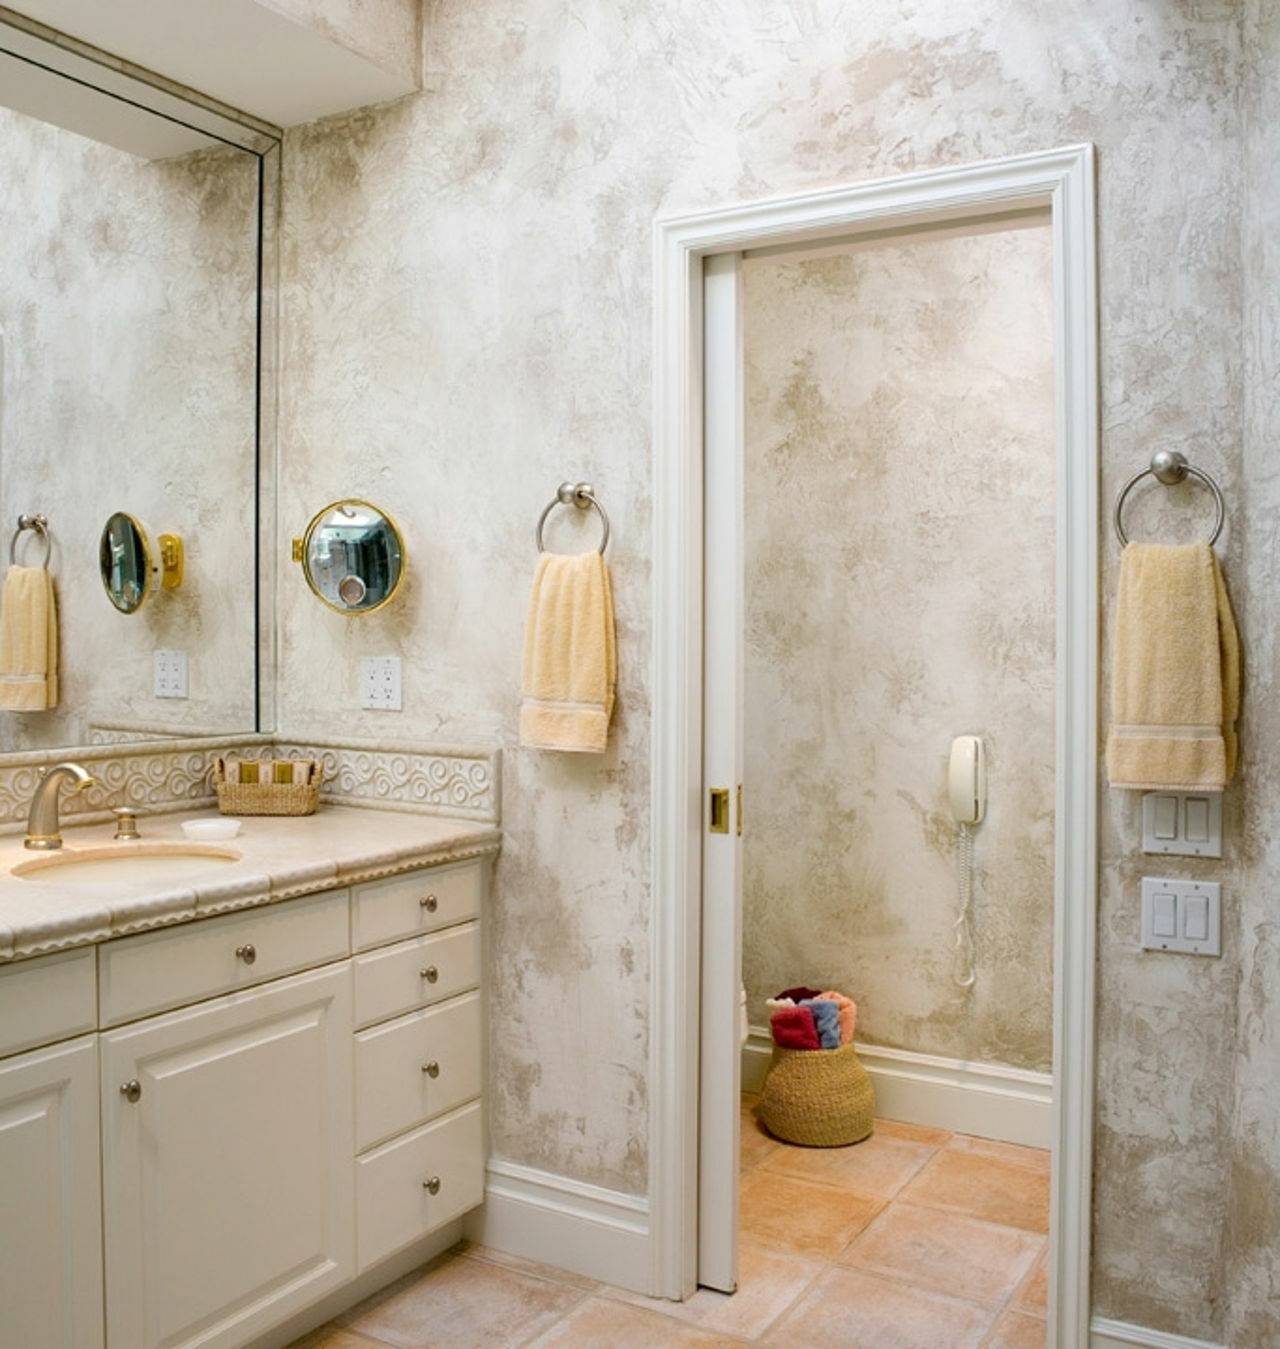 Декоративная штукатурка для ванной комнаты, можно ли использовать фактурную штукатурку в ванной, фото интерьеров